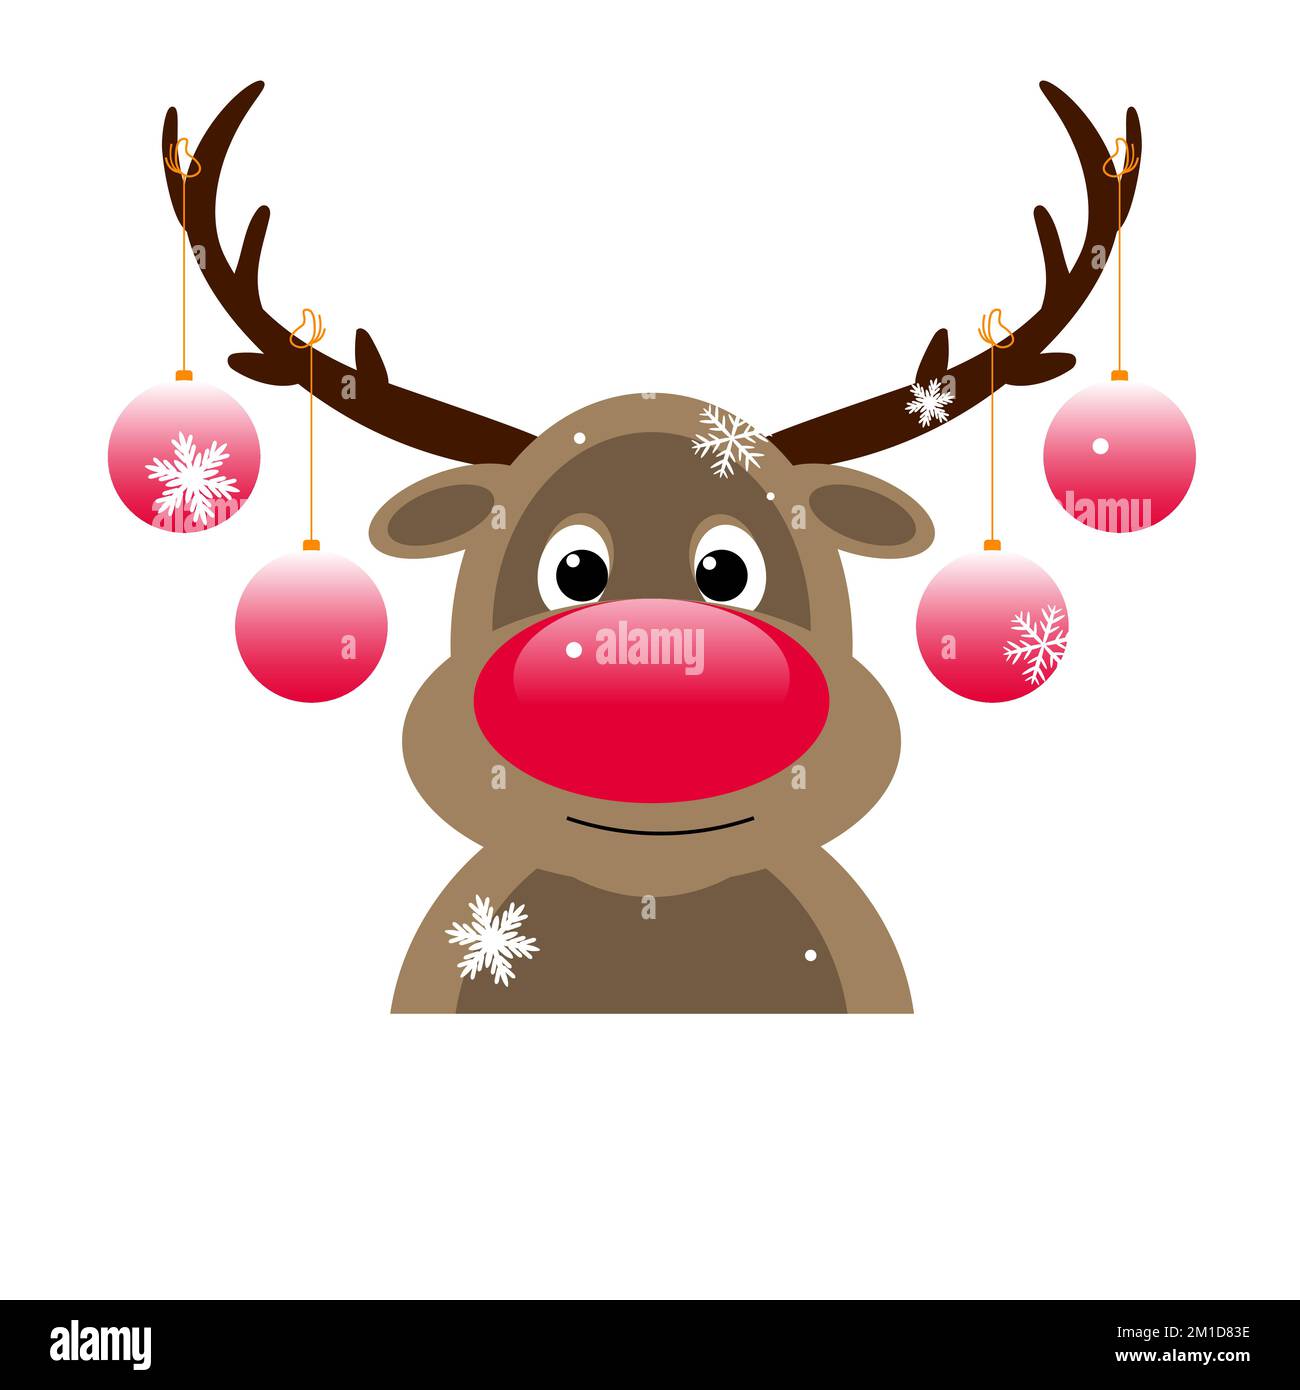 Das Zeichentrickhirsch mit roter Nase ist mit Weihnachtsbällen verziert. Rentiere auf weißem Hintergrund. Stock Vektor